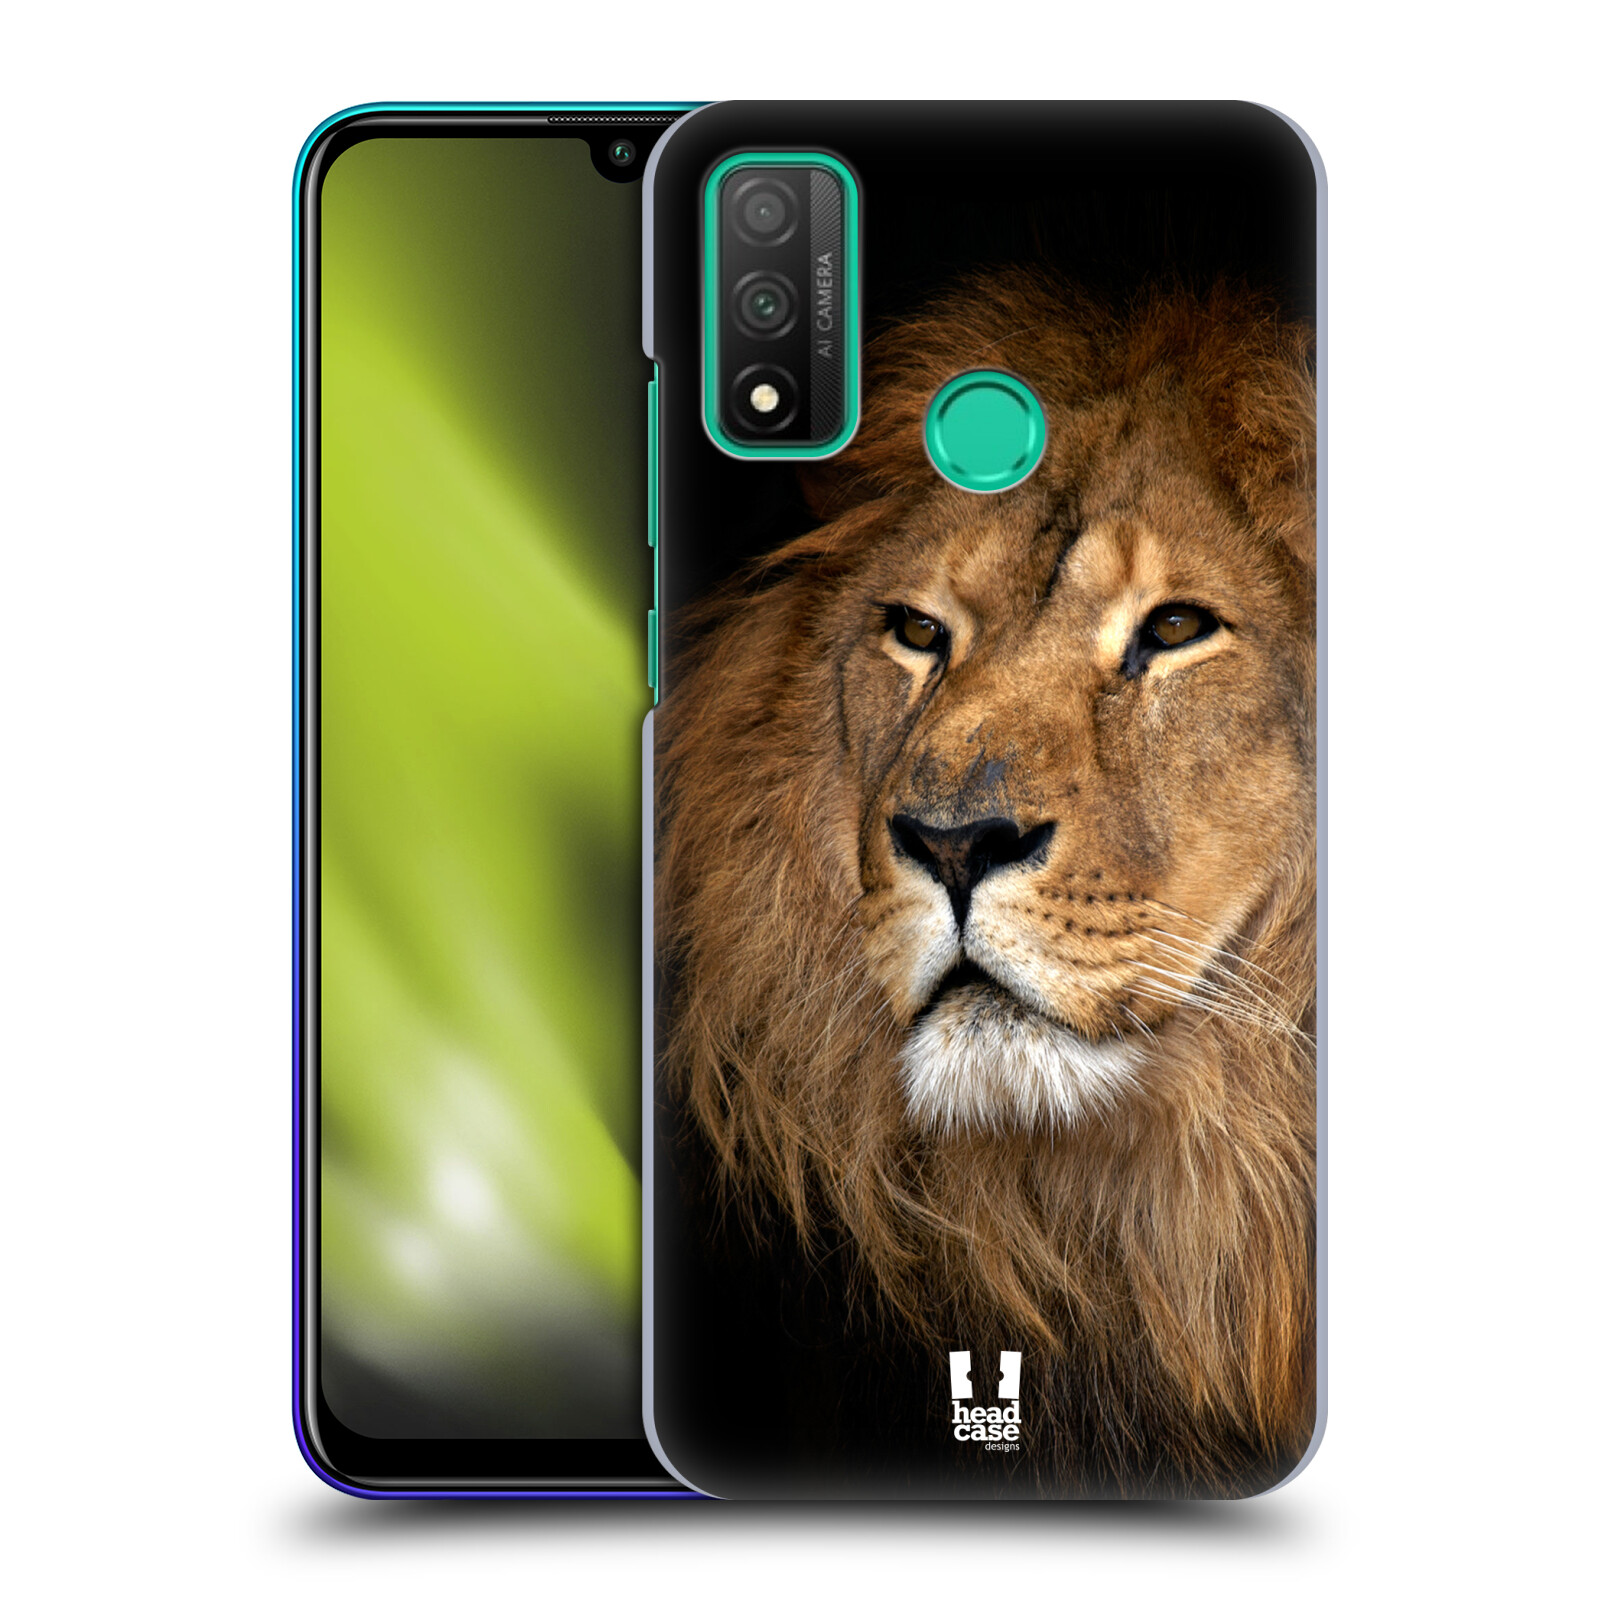 Zadní obal pro mobil Huawei P SMART 2020 - HEAD CASE - Svět zvířat král zvířat Lev